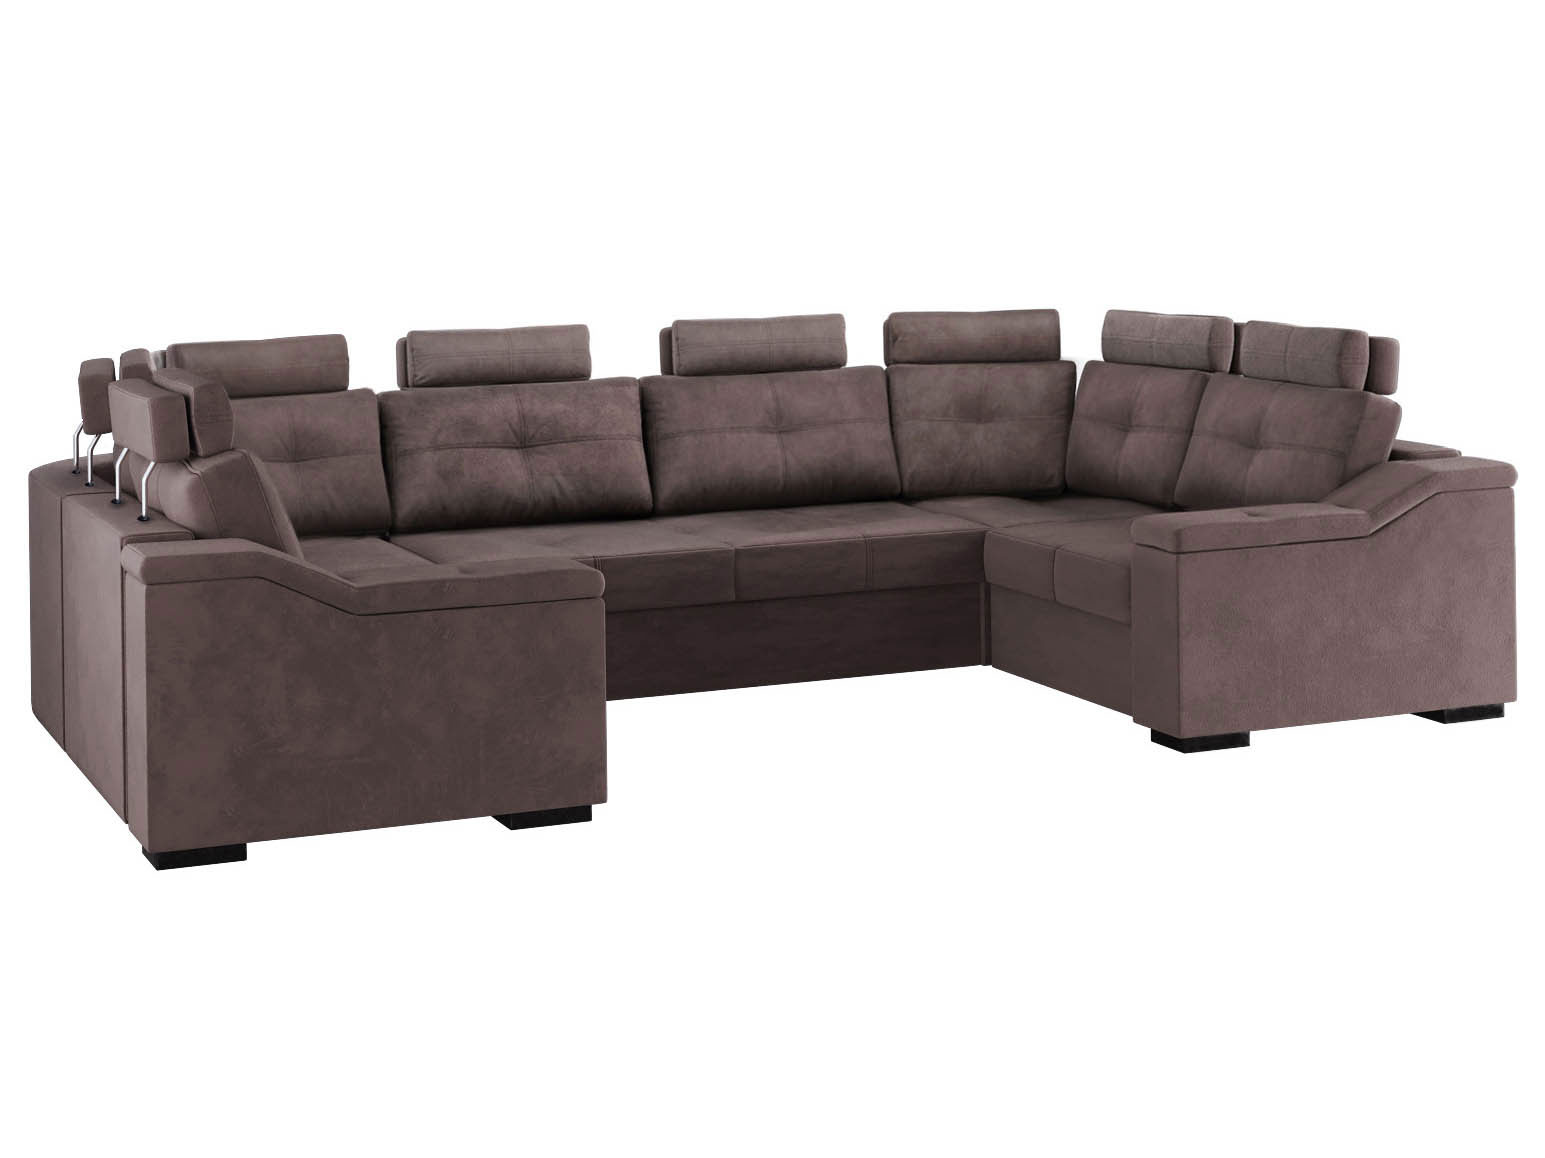 П-образный диван с креслами Триумф фото 1